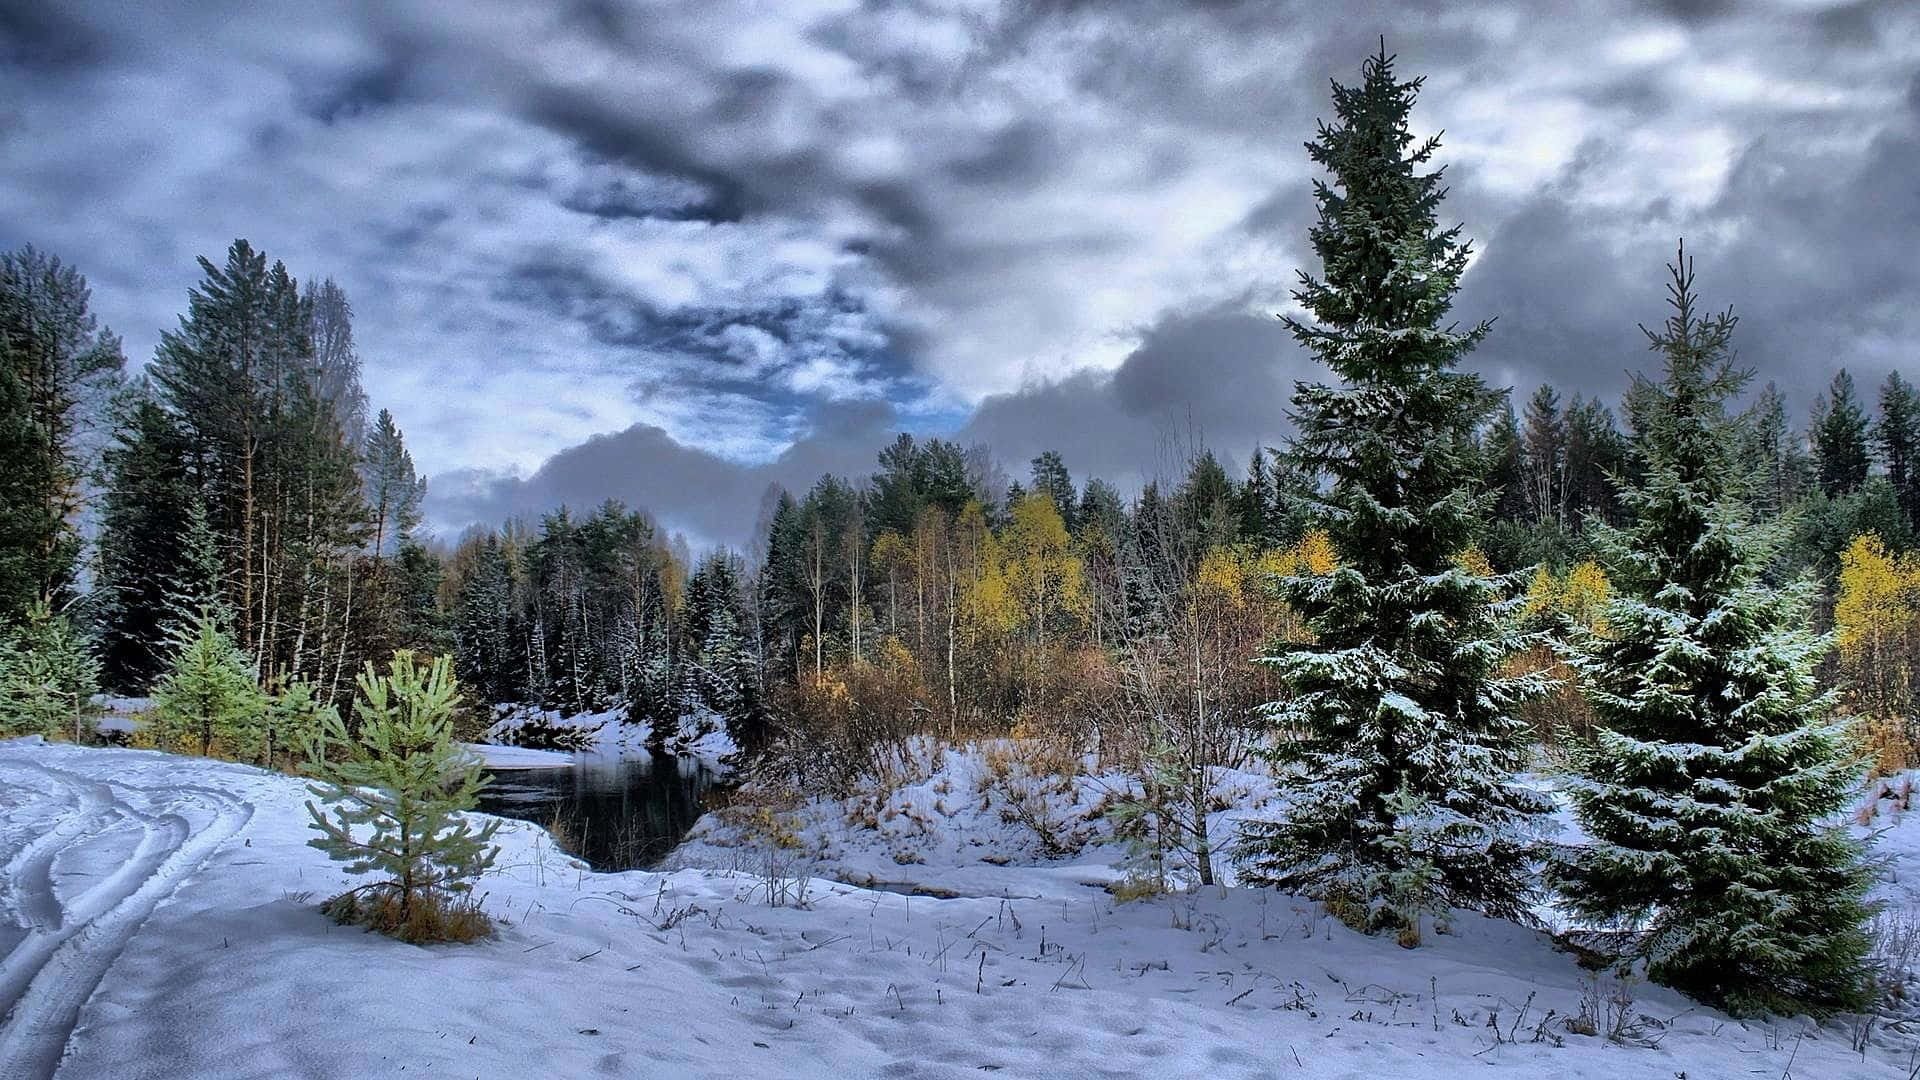 Breathtaking Winter Scene